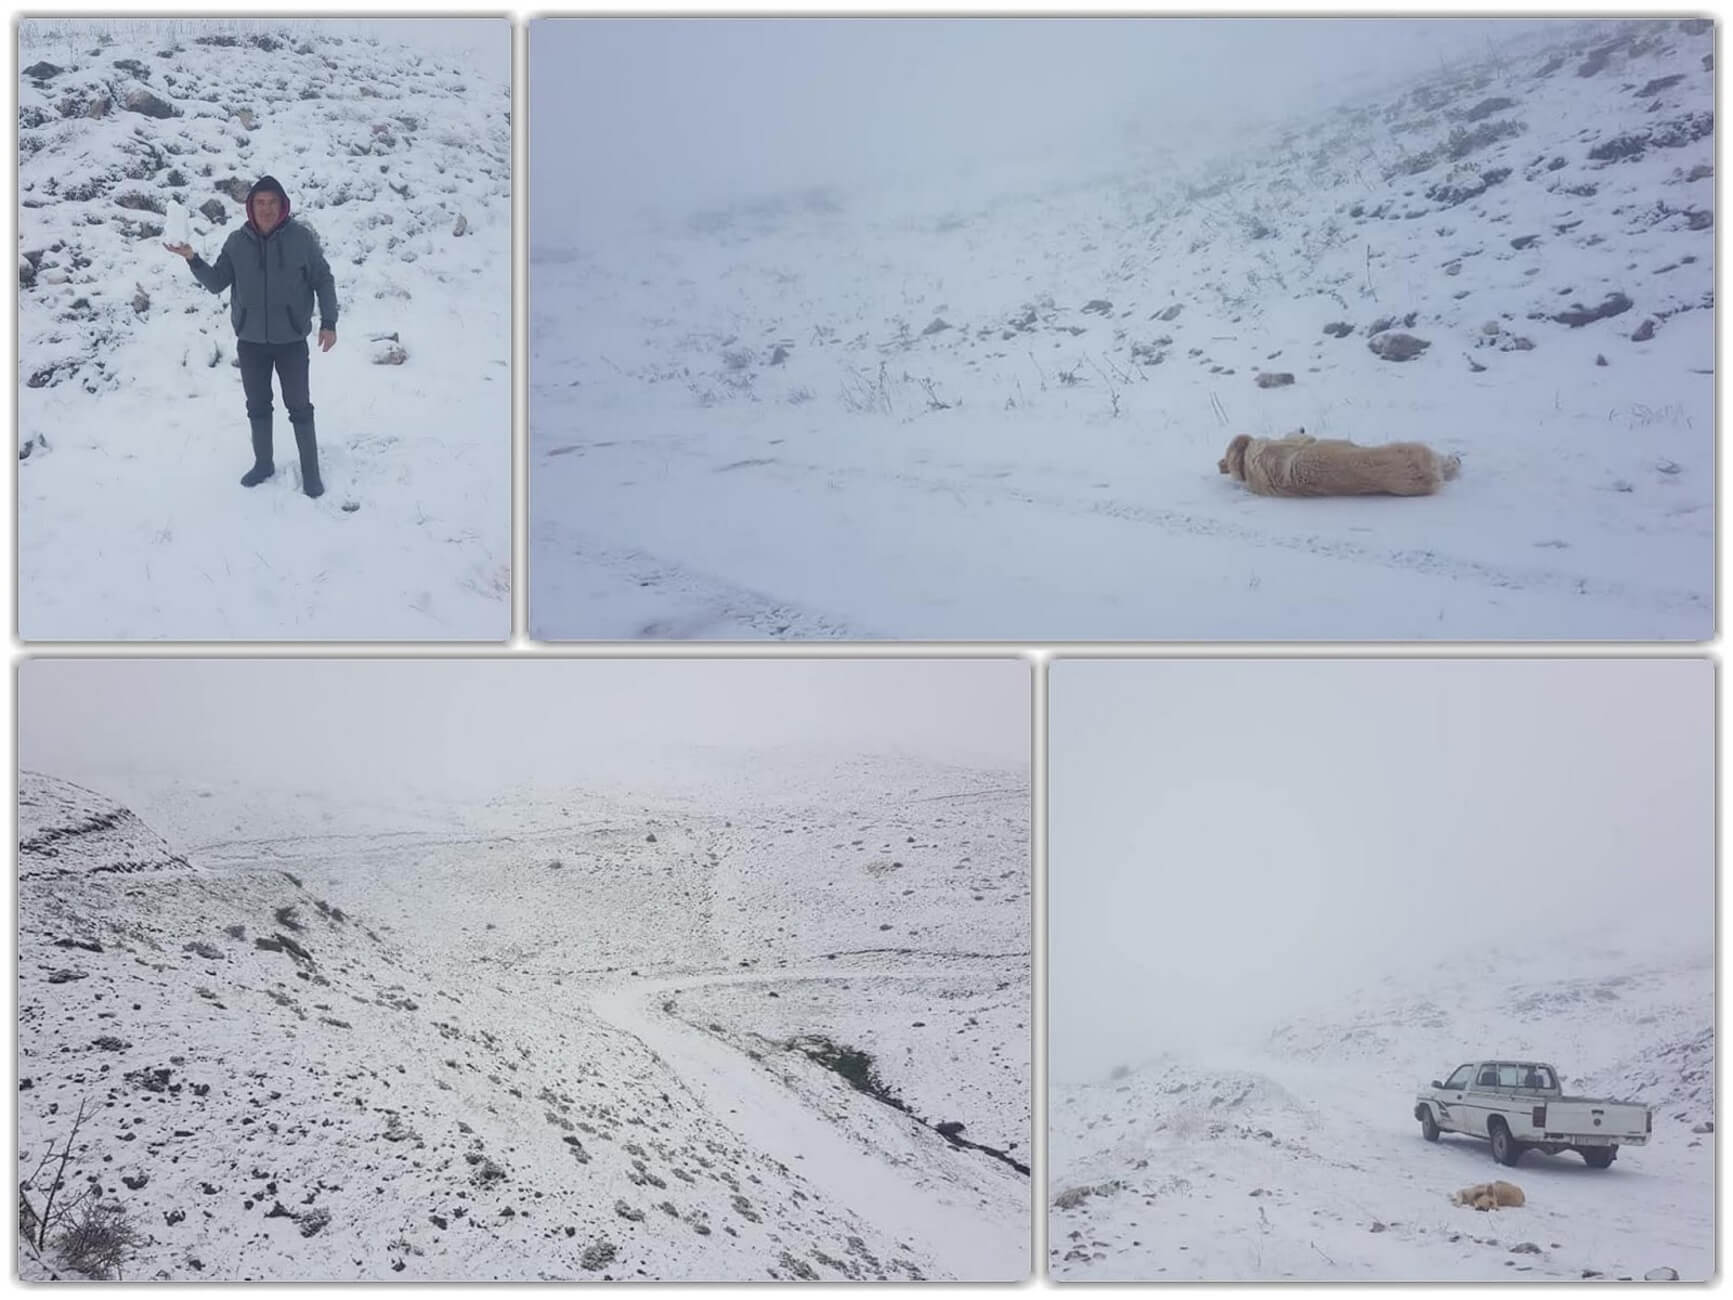 Γιάννενα: Επιστροφή στον χειμώνα με χιόνια – Ο καιρός “τρελάθηκε” στο κατάλευκο Συρράκο [pics]